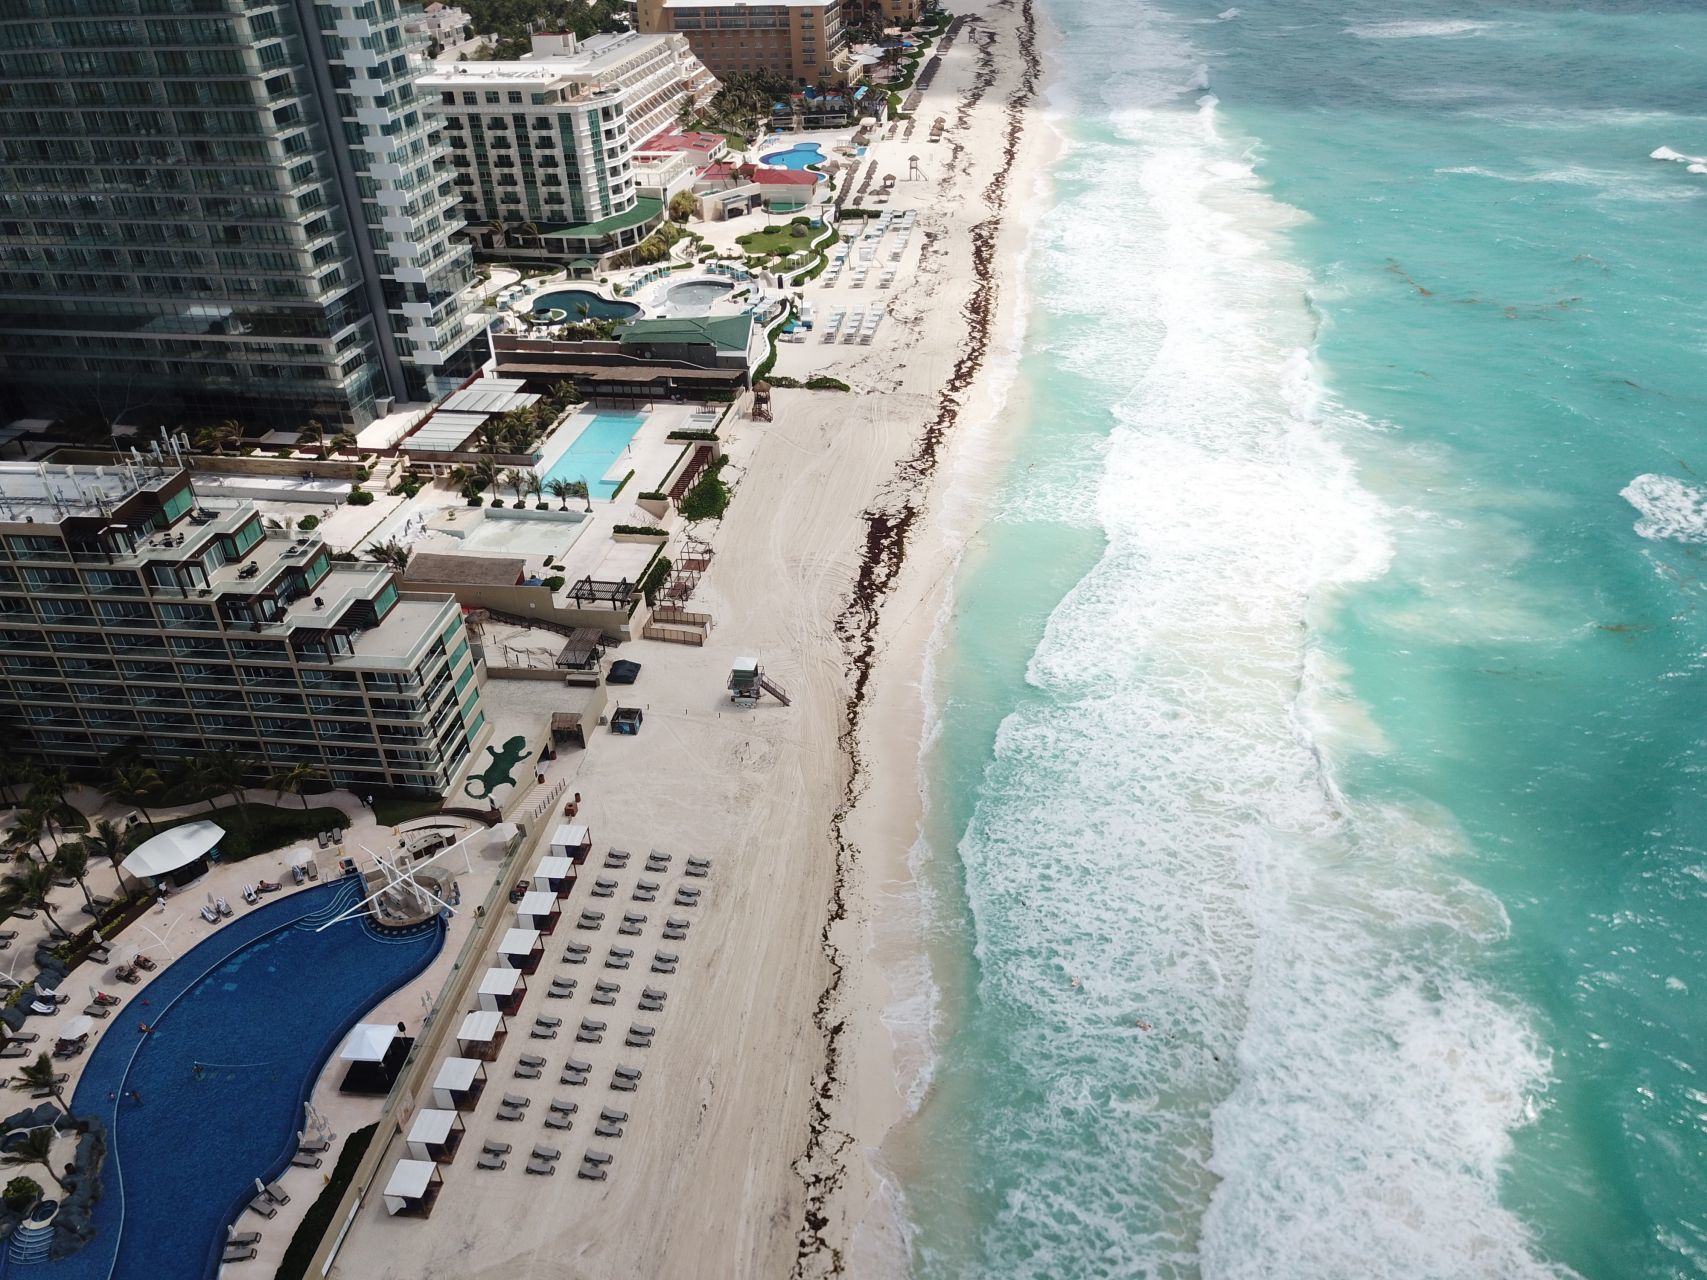 Tras la irrupción del COVID-19, Cancún suspendió en abril toda su actividad turística. El 8 de junio reabrió bajo estrictas medidas de seguridad, con una tasa de ocupación turística del 15%. Hoy, ese porcentaje se encuentra en el 60%, y entre junio y noviembre, 2.8 millones de turistas visitaron la entidad (Foto: Elizabeth Ruíz/Cuartoscuro) 
